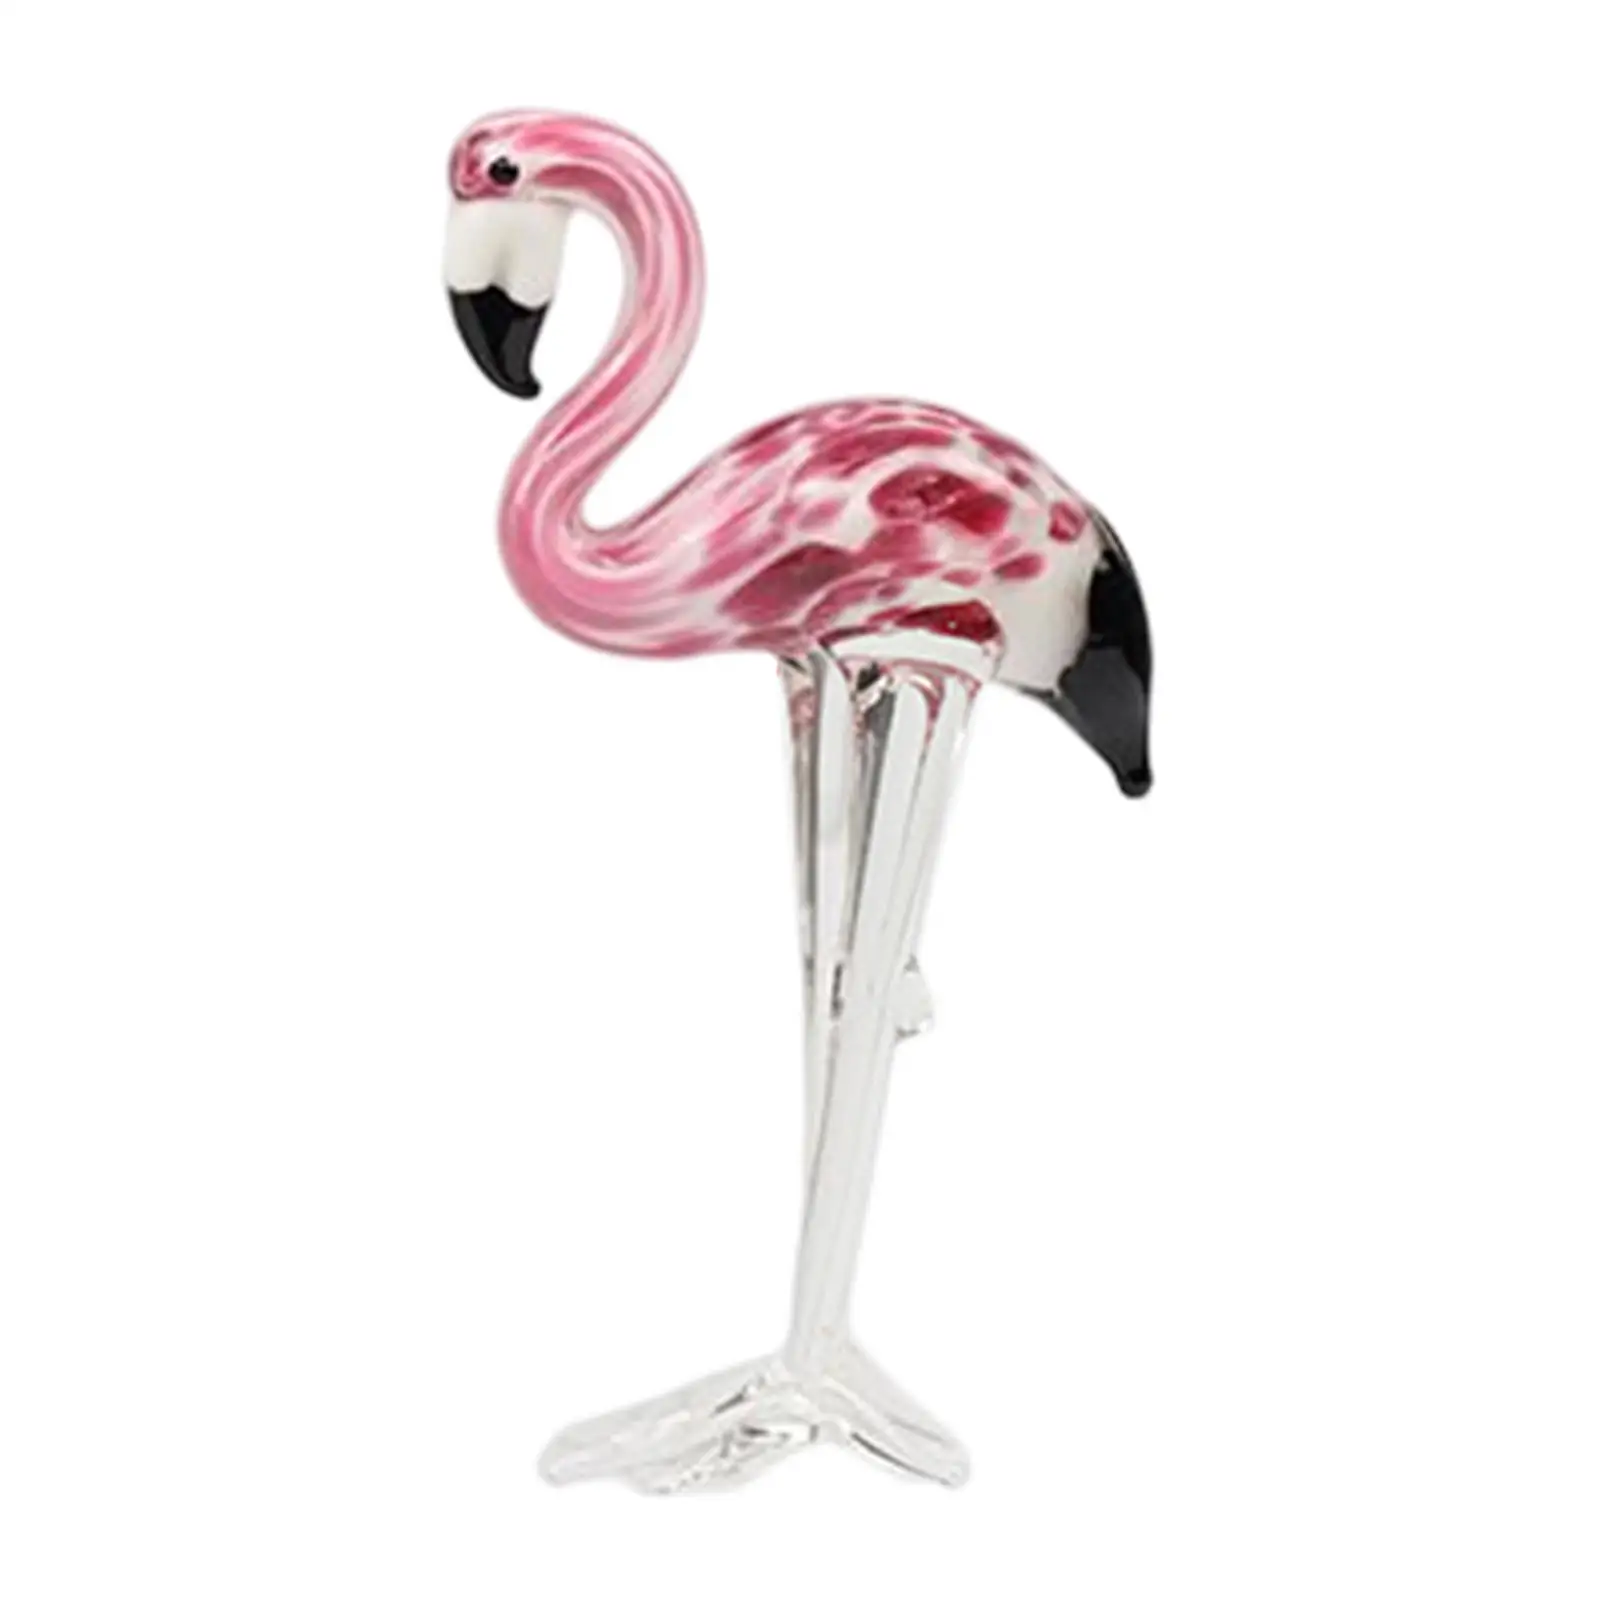 Glass Figurine Flamingo Christmas Ornament Souvenir Artwork for Night Stands